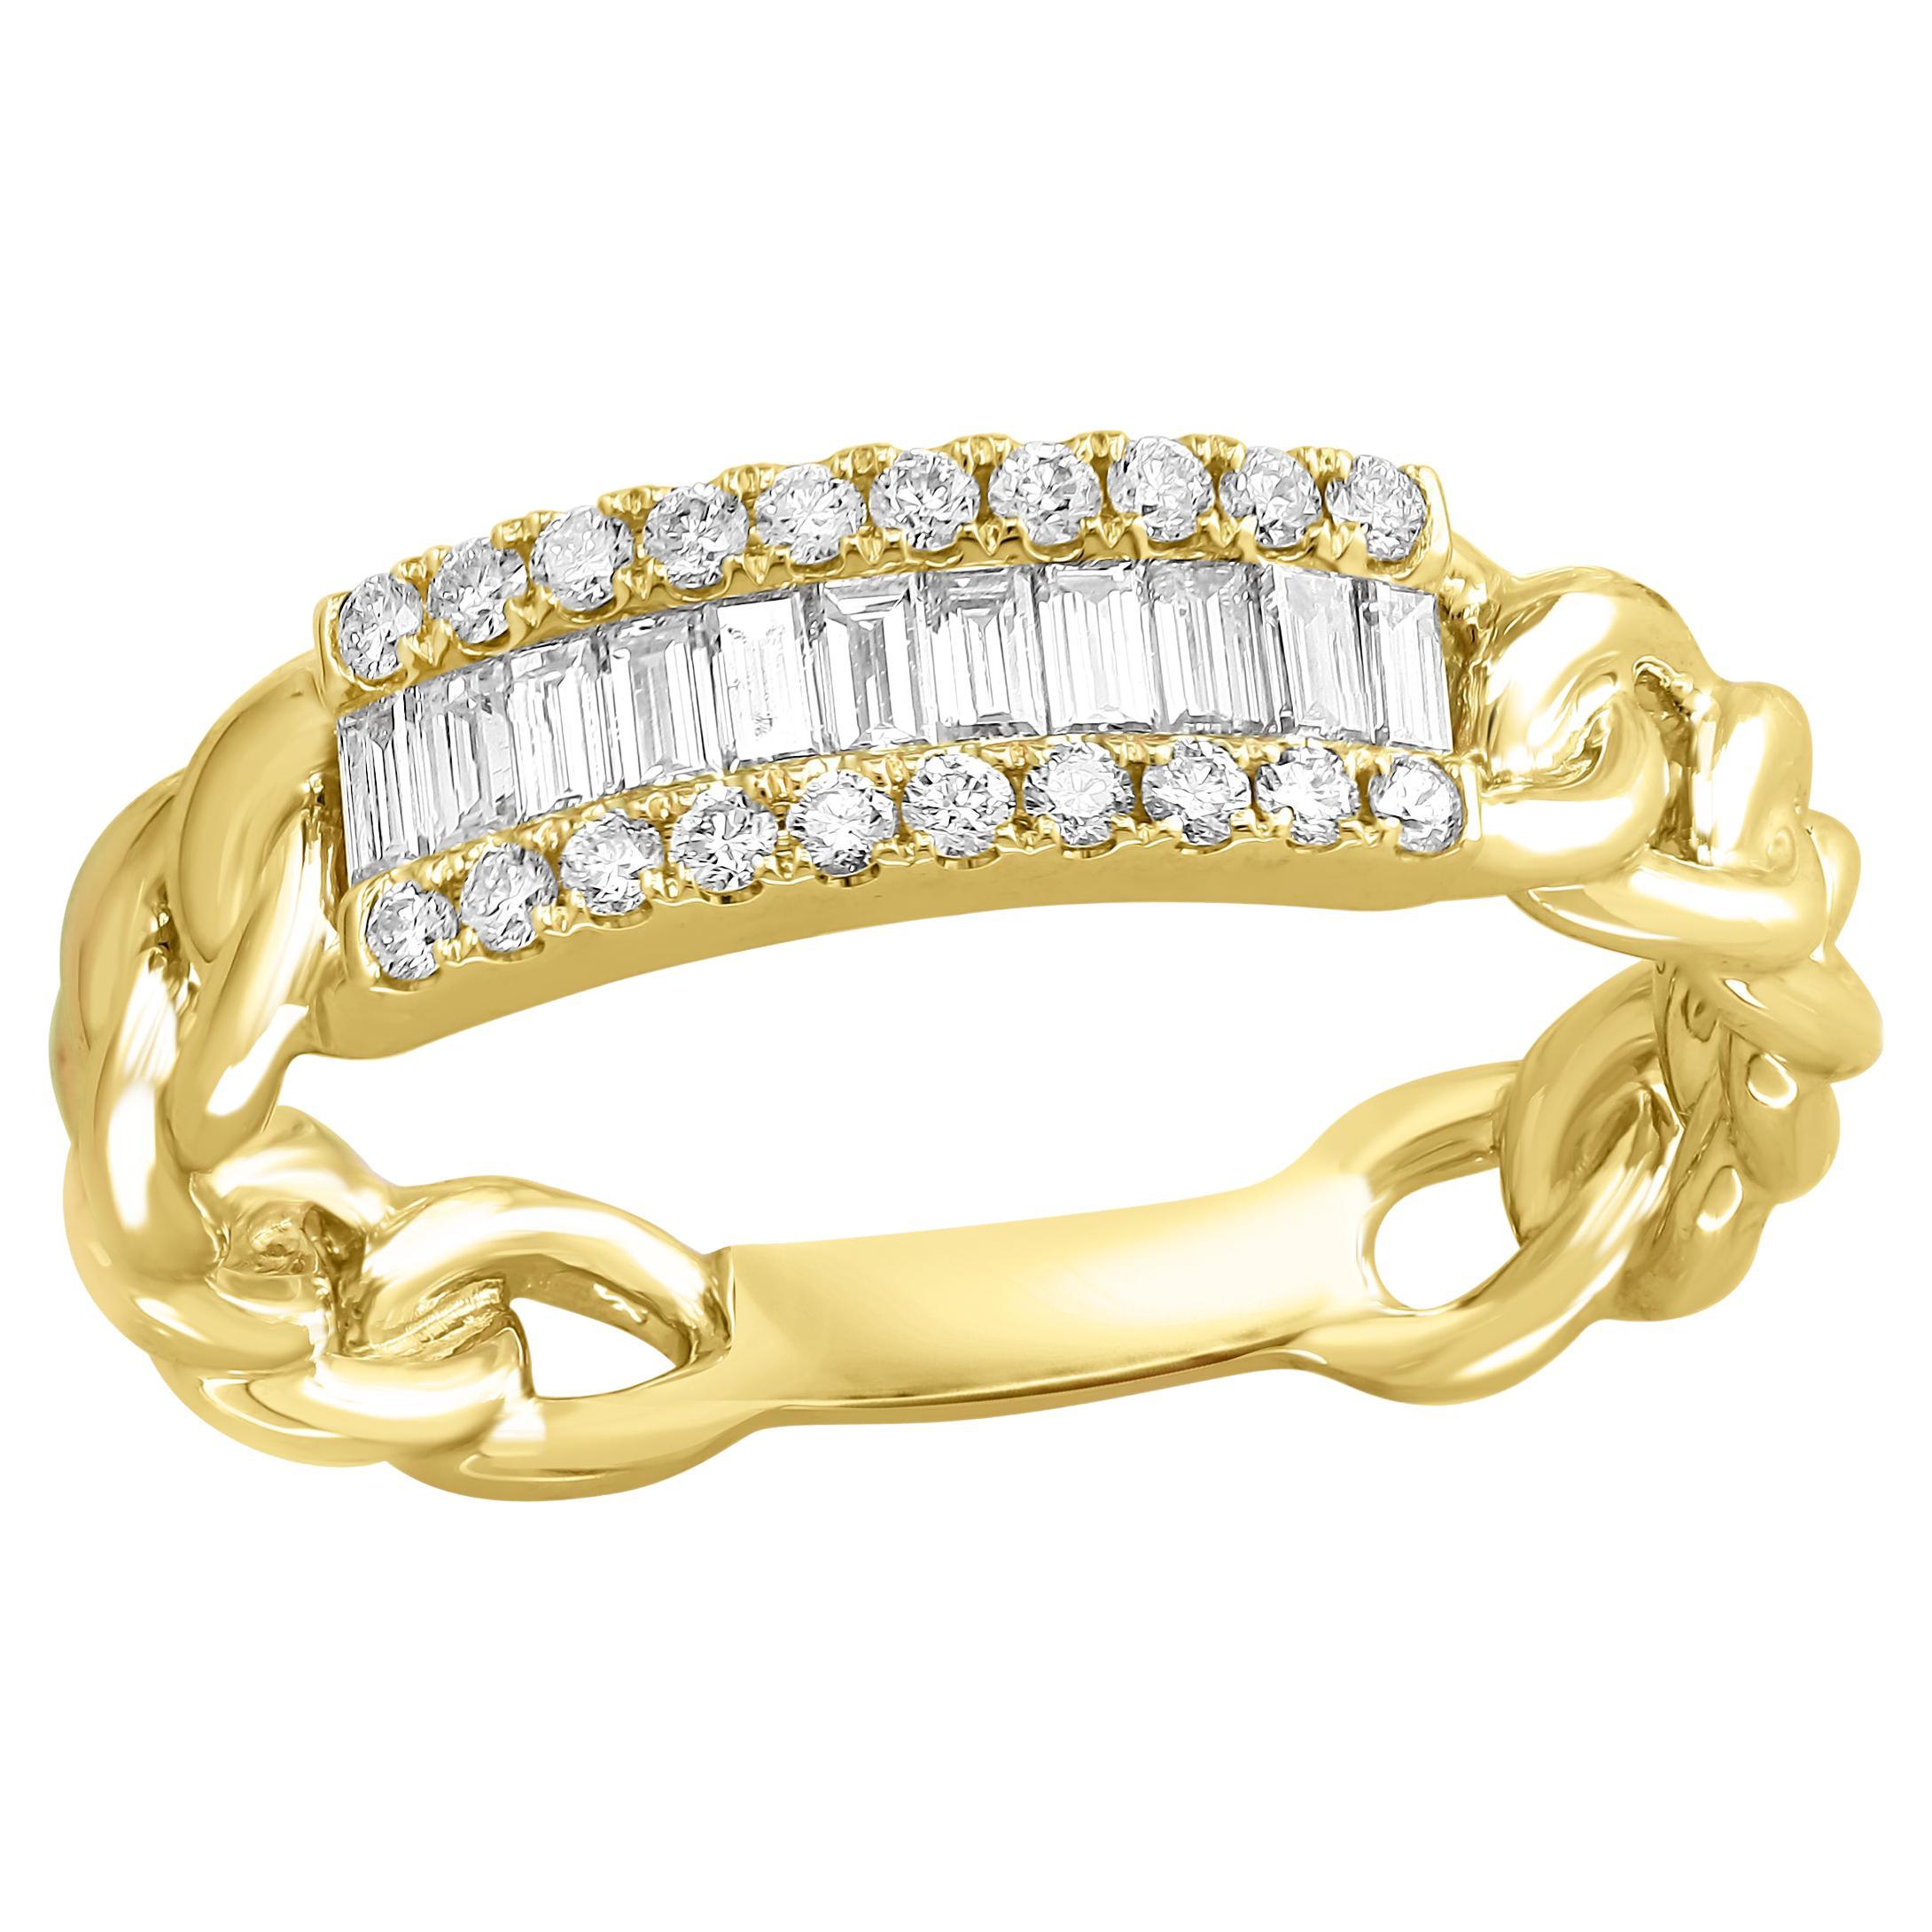 Bague à la mode en or jaune 18 carats avec diamants baguettes de 0,41 carat